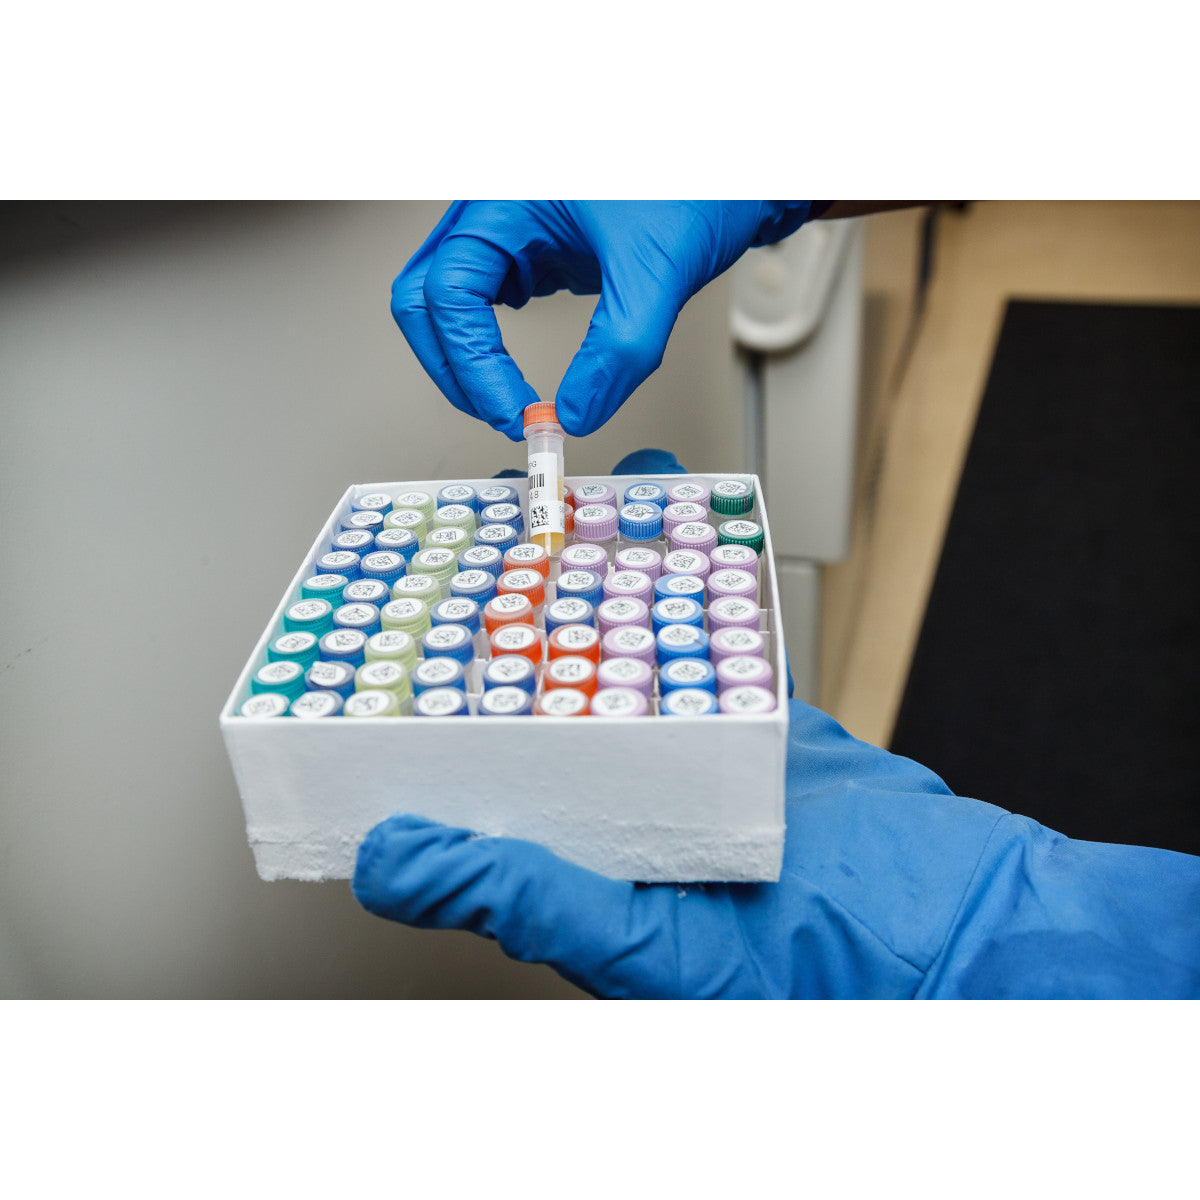 805916 - Etichette per laboratori in poliestere resistente a sostanze chimiche core 76 mm ROTOLO DA 3000 ETICHETTE